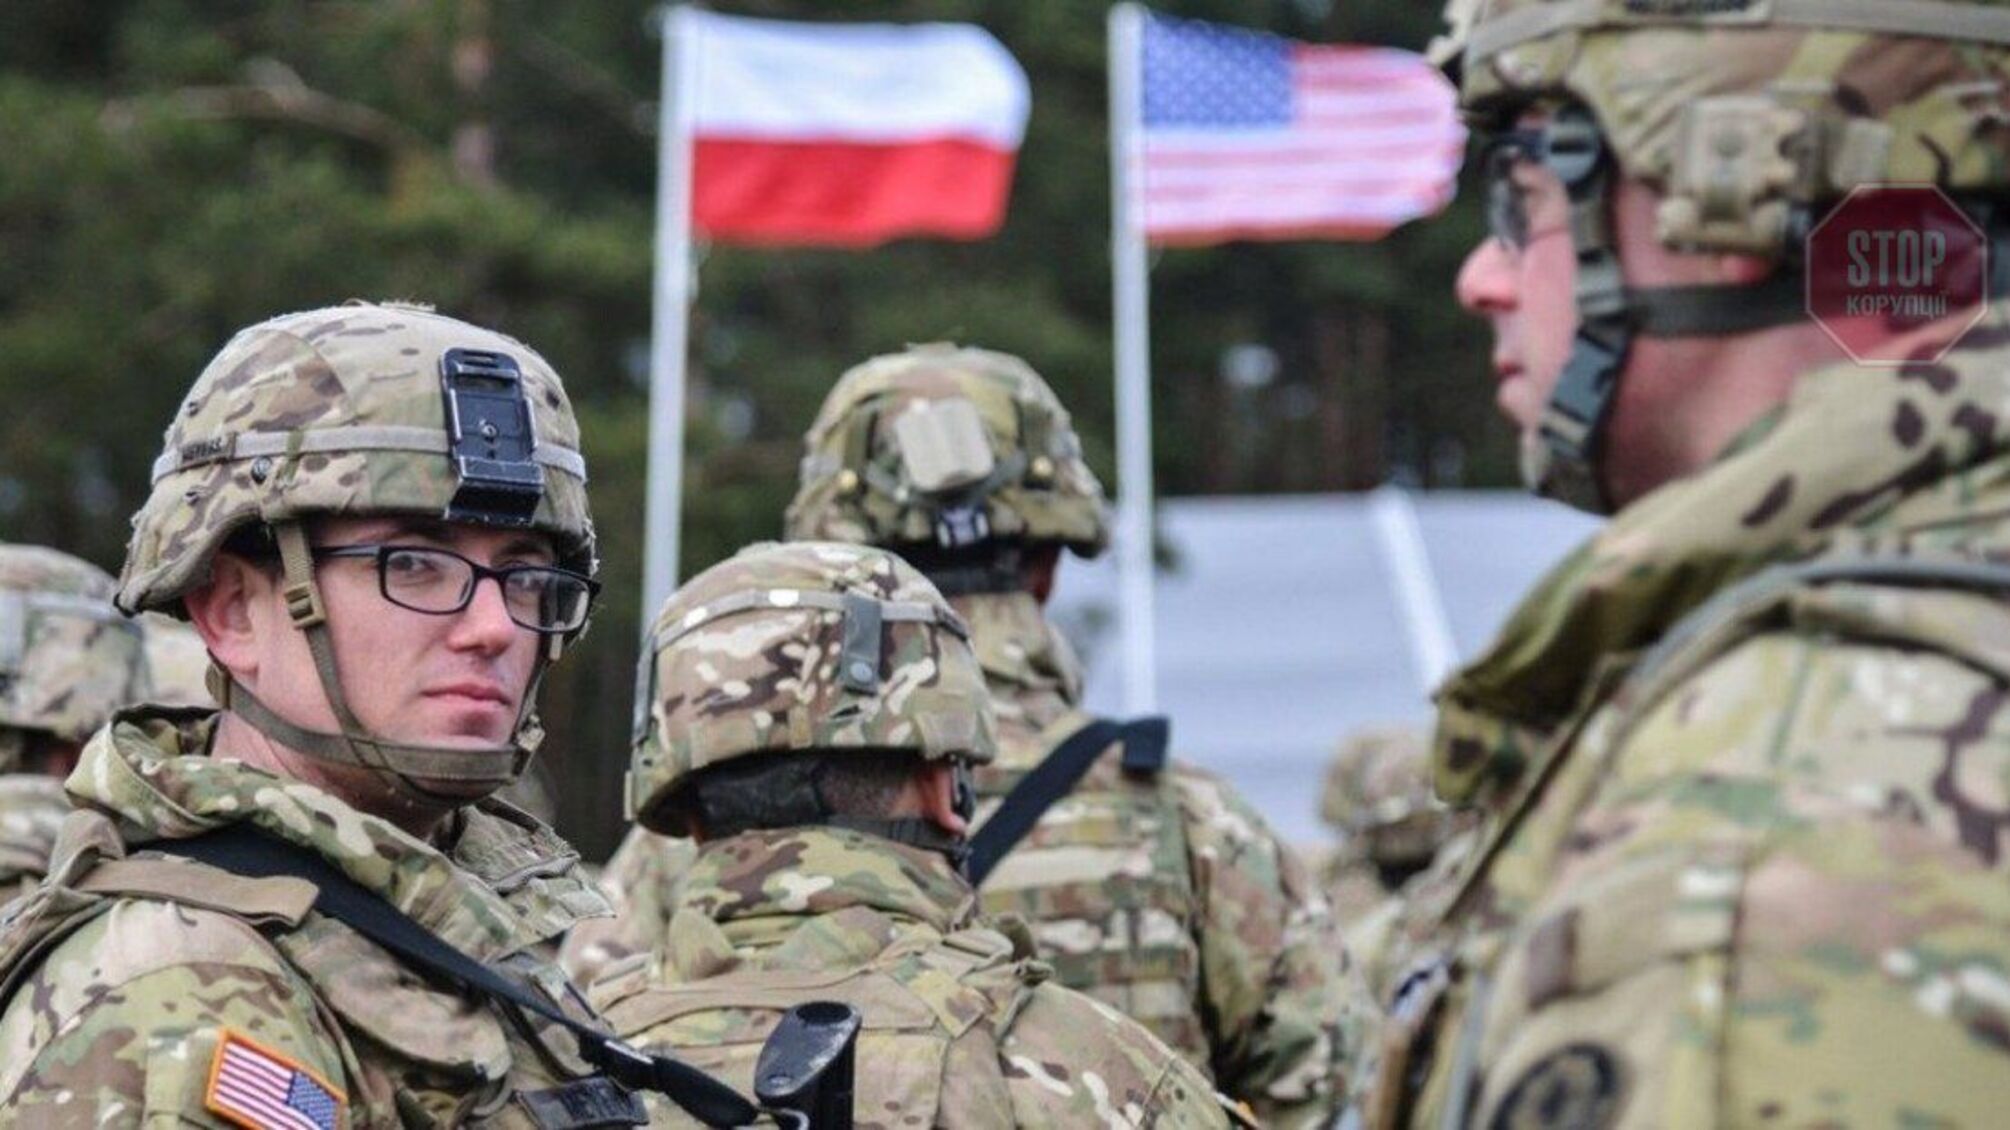 Reuters: Войска США в Польше готовятся к возможной эвакуации американцев из Украины